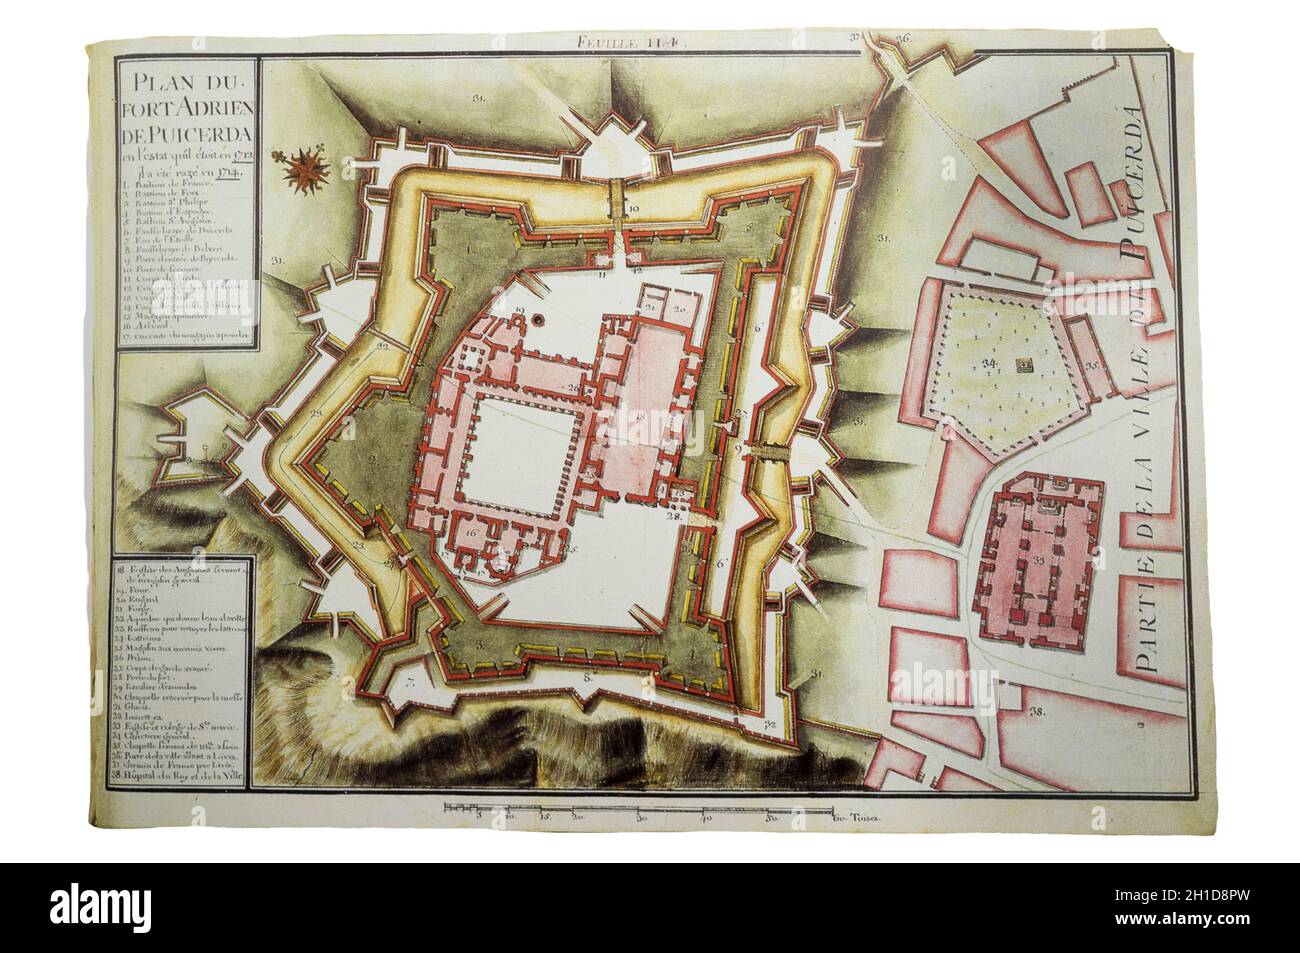 Mappa della Fortezza di Puigcerda Adriano, 1712. A Claude Masse Atlas, la compilazione cartografica effettuata dai servizi francesi di spionaggio Foto Stock